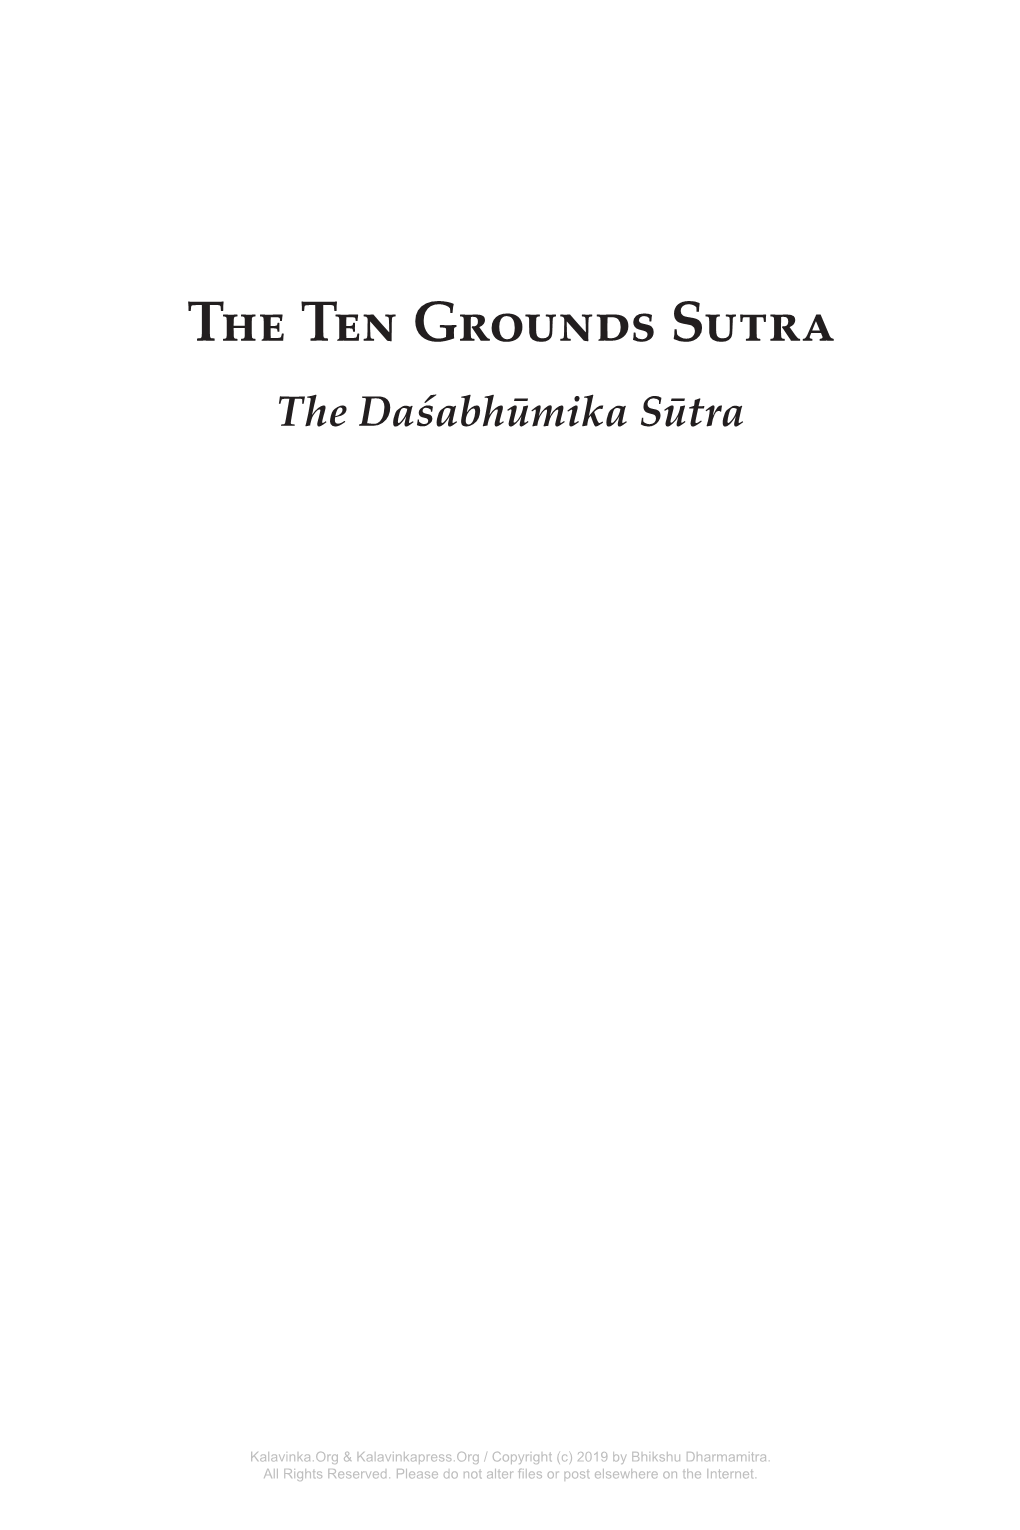 The Ten Grounds Sutra the Daśabhūmika Sūtra